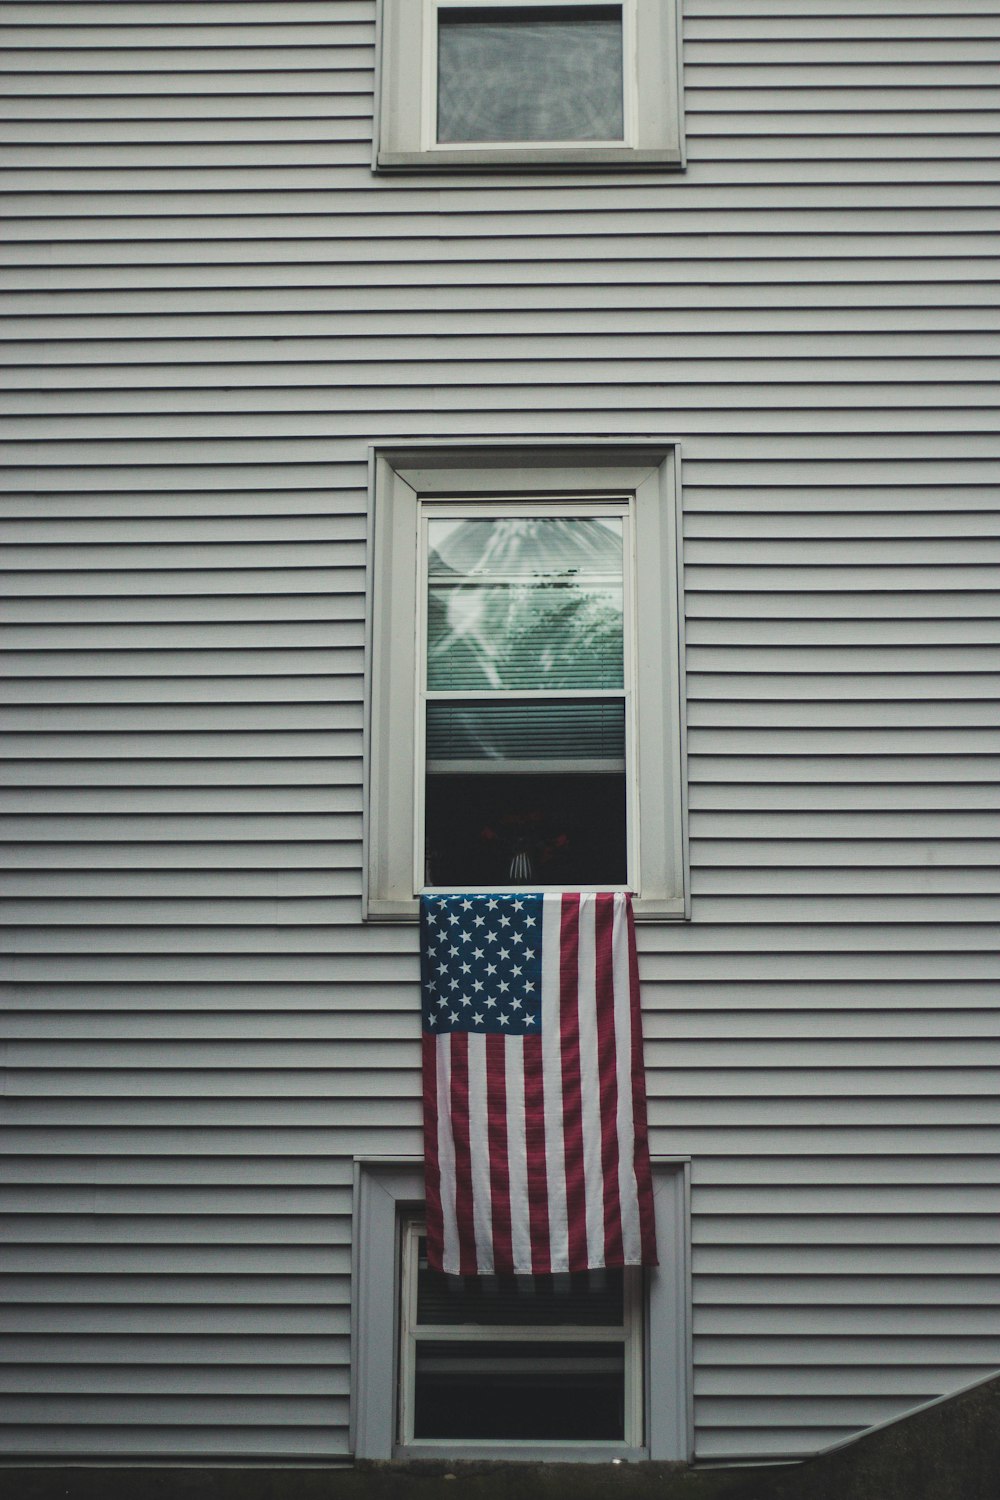 USA flag on window pane